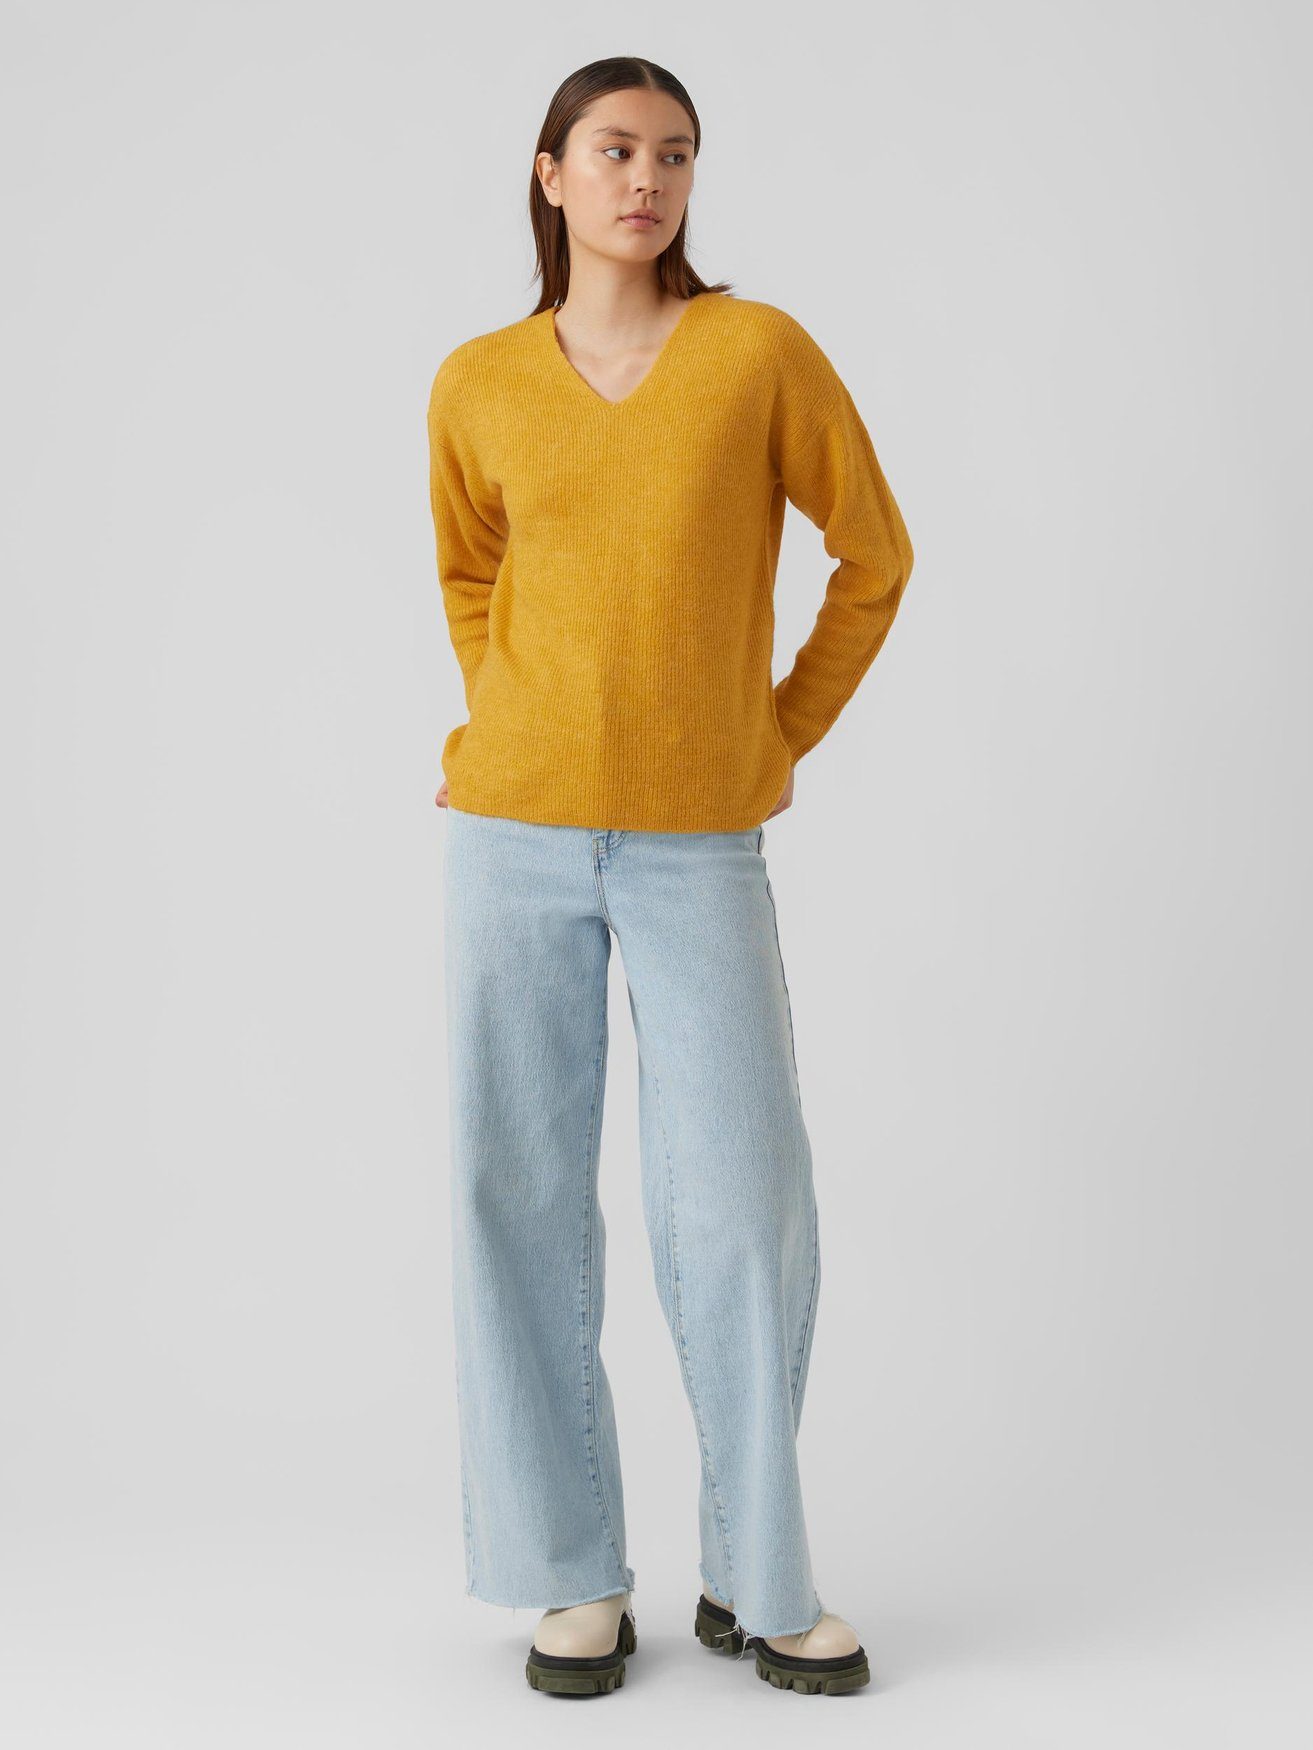 Vero Moda Strickpullover Strickpullover V-Ausschnitt Sweater Gelb in VMCREWLEFILE 6112 Langarm